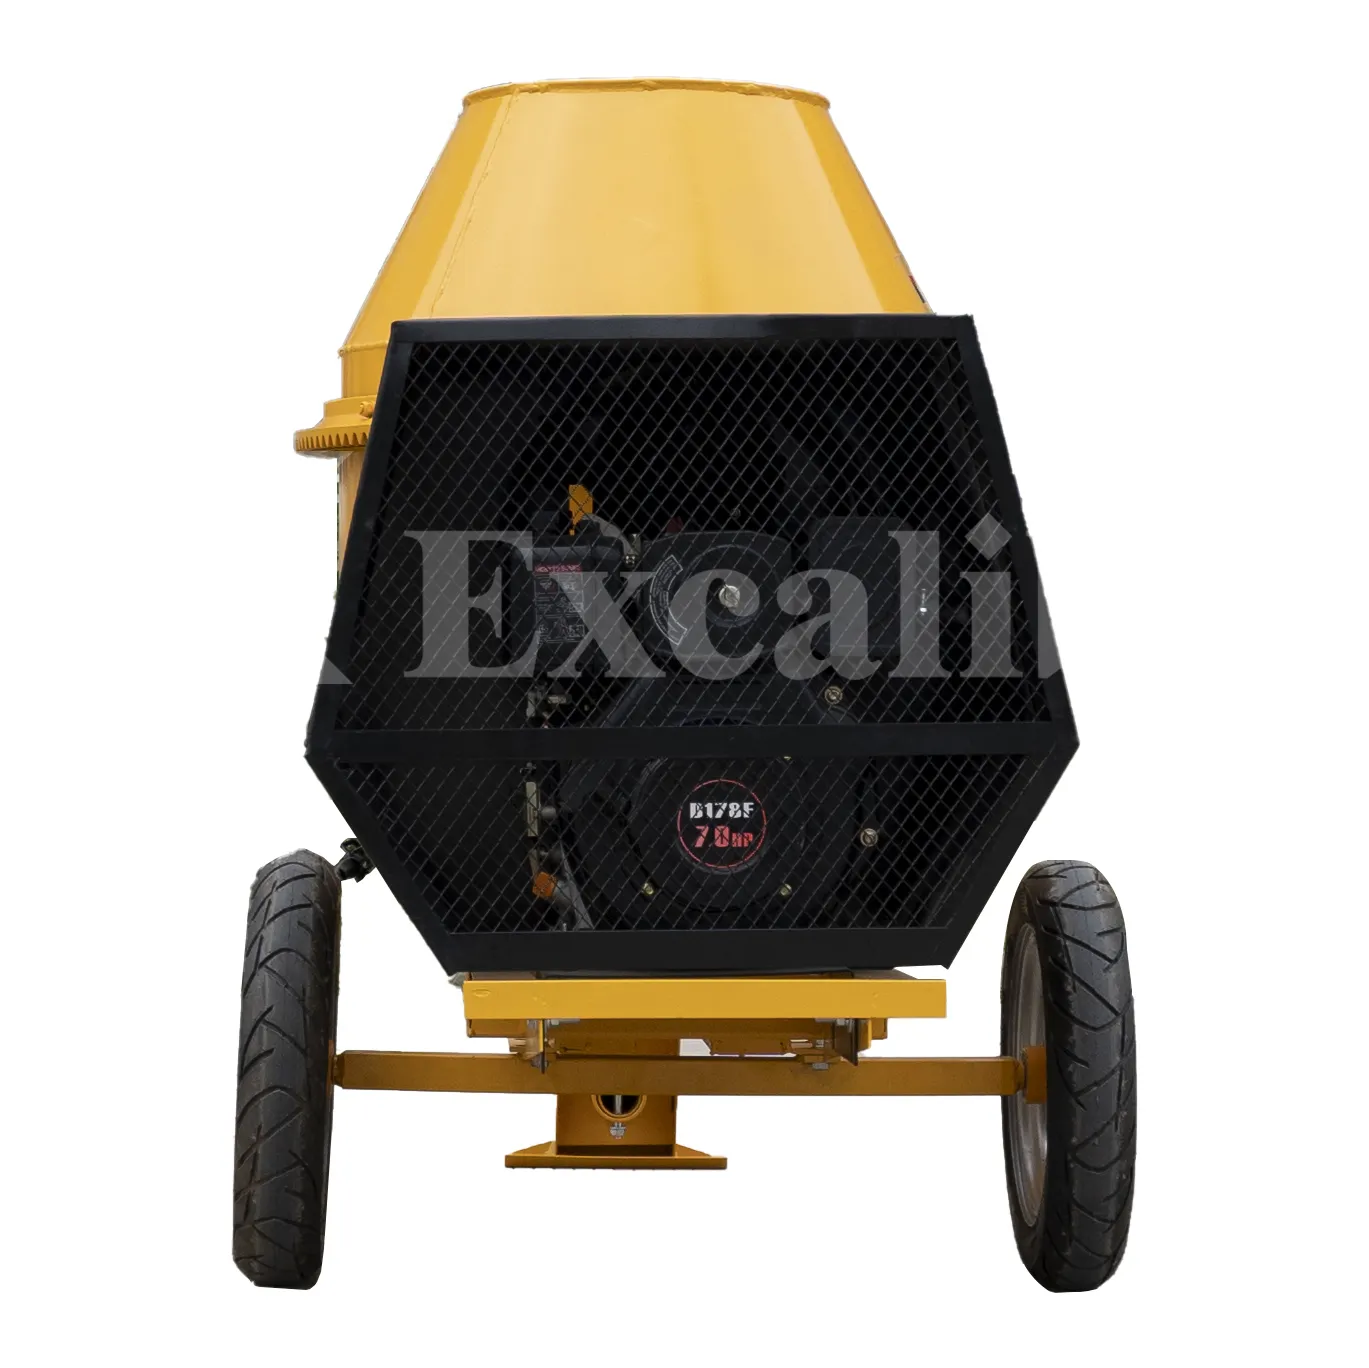 Excalibur mixer beton 500 Liter 2 tas harga mesin pencampur semen beton